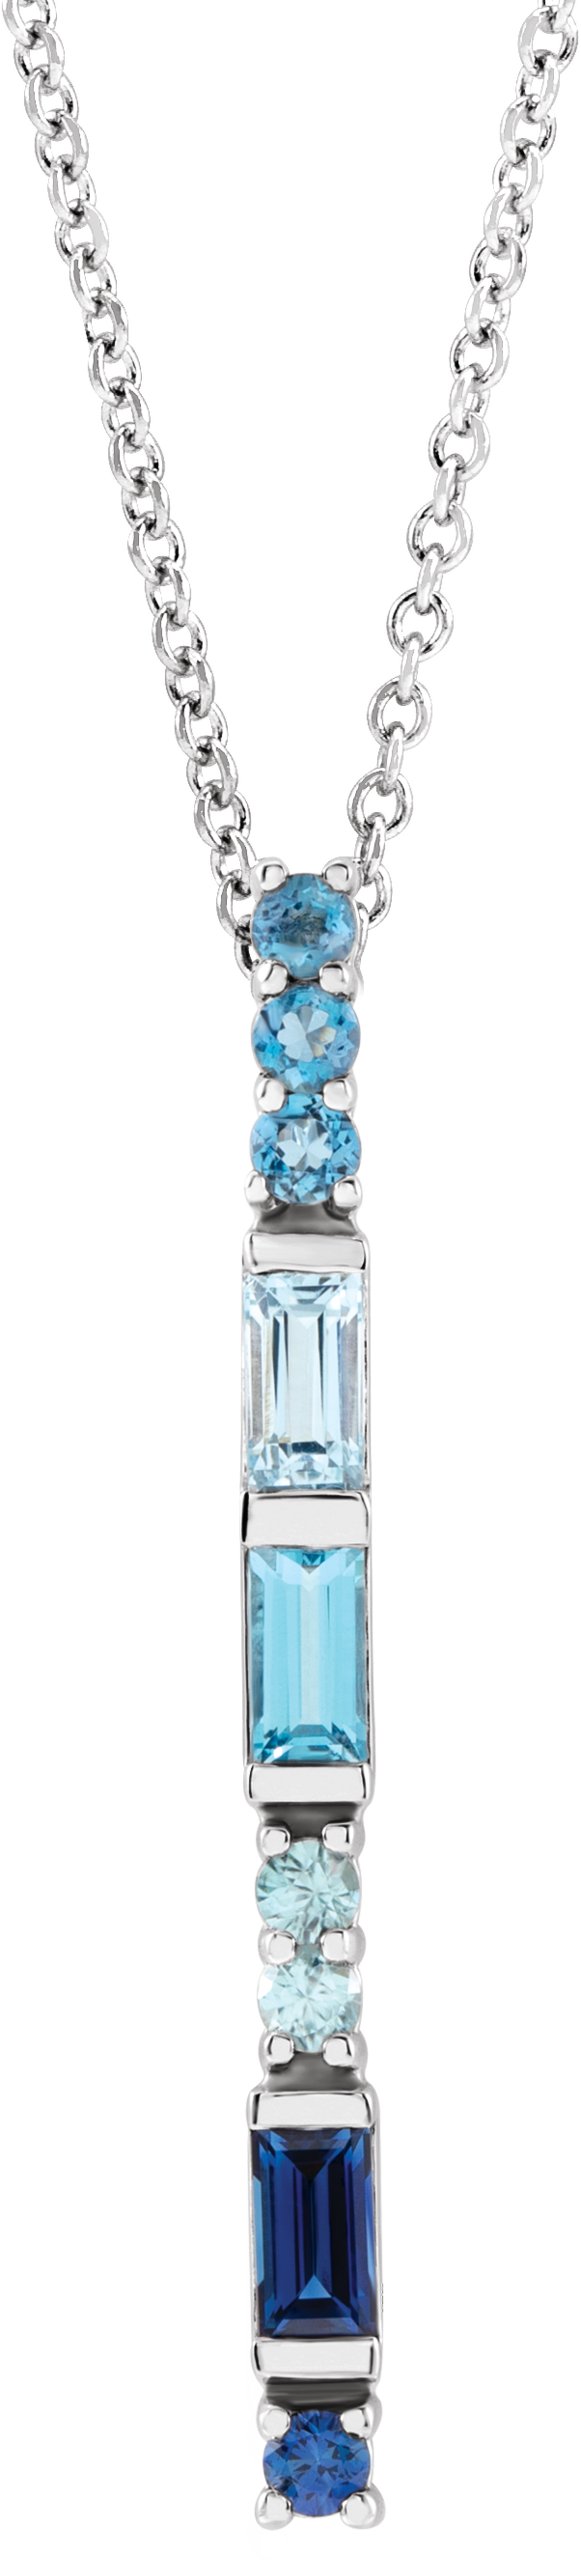 14K White Blue Multi-Gemstone Bar 16-18" Necklace